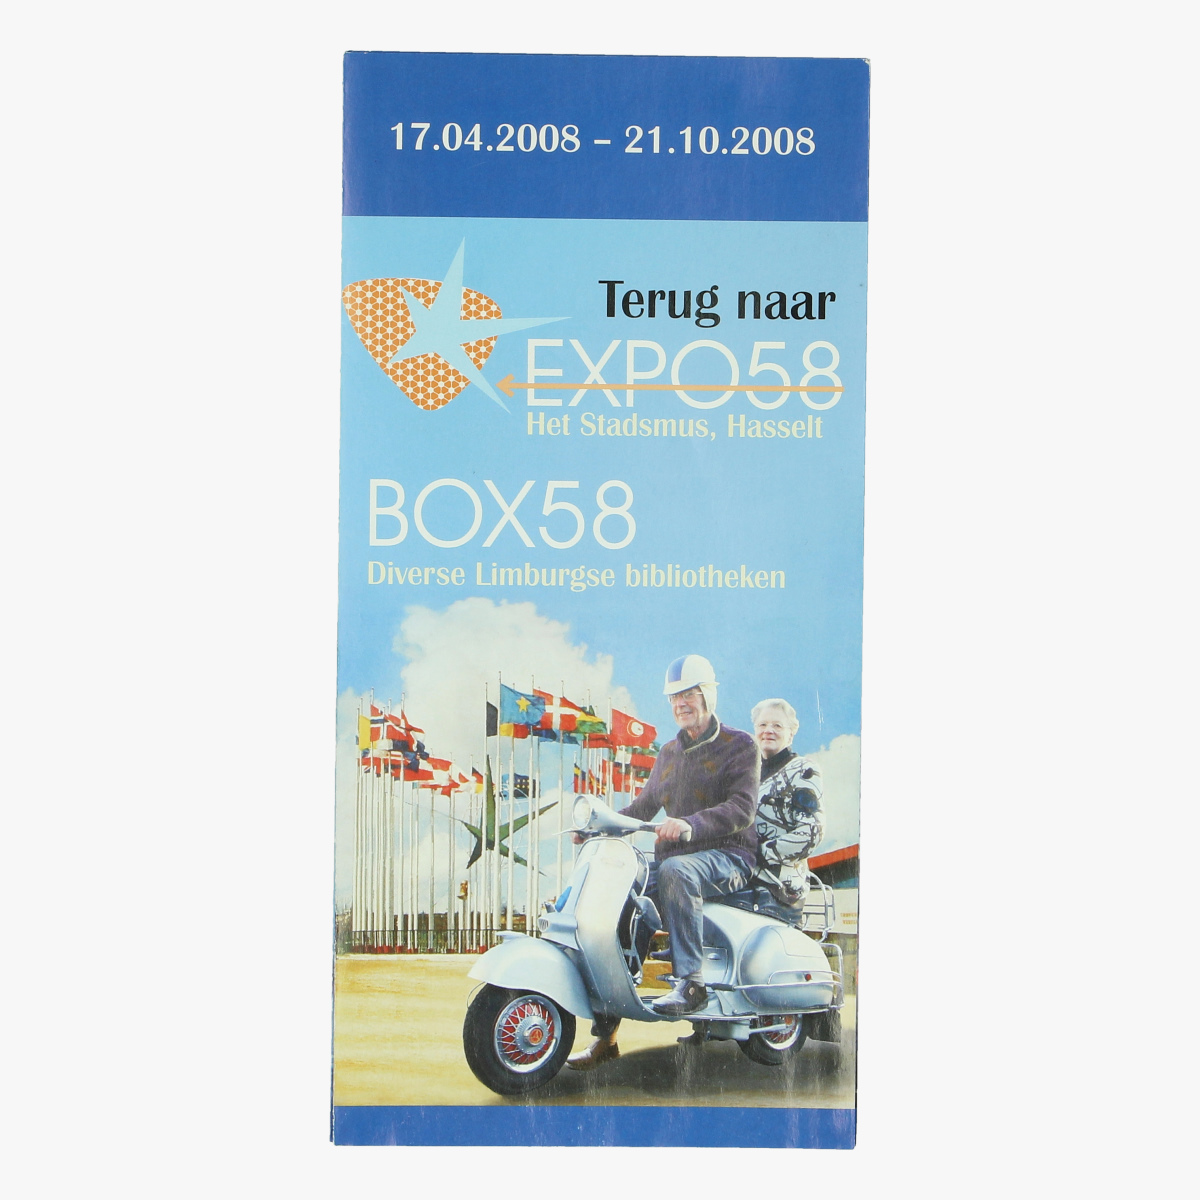 Afbeeldingen van expo 58 flyer terug naar expo58 het stadsmus, hasselt box58 